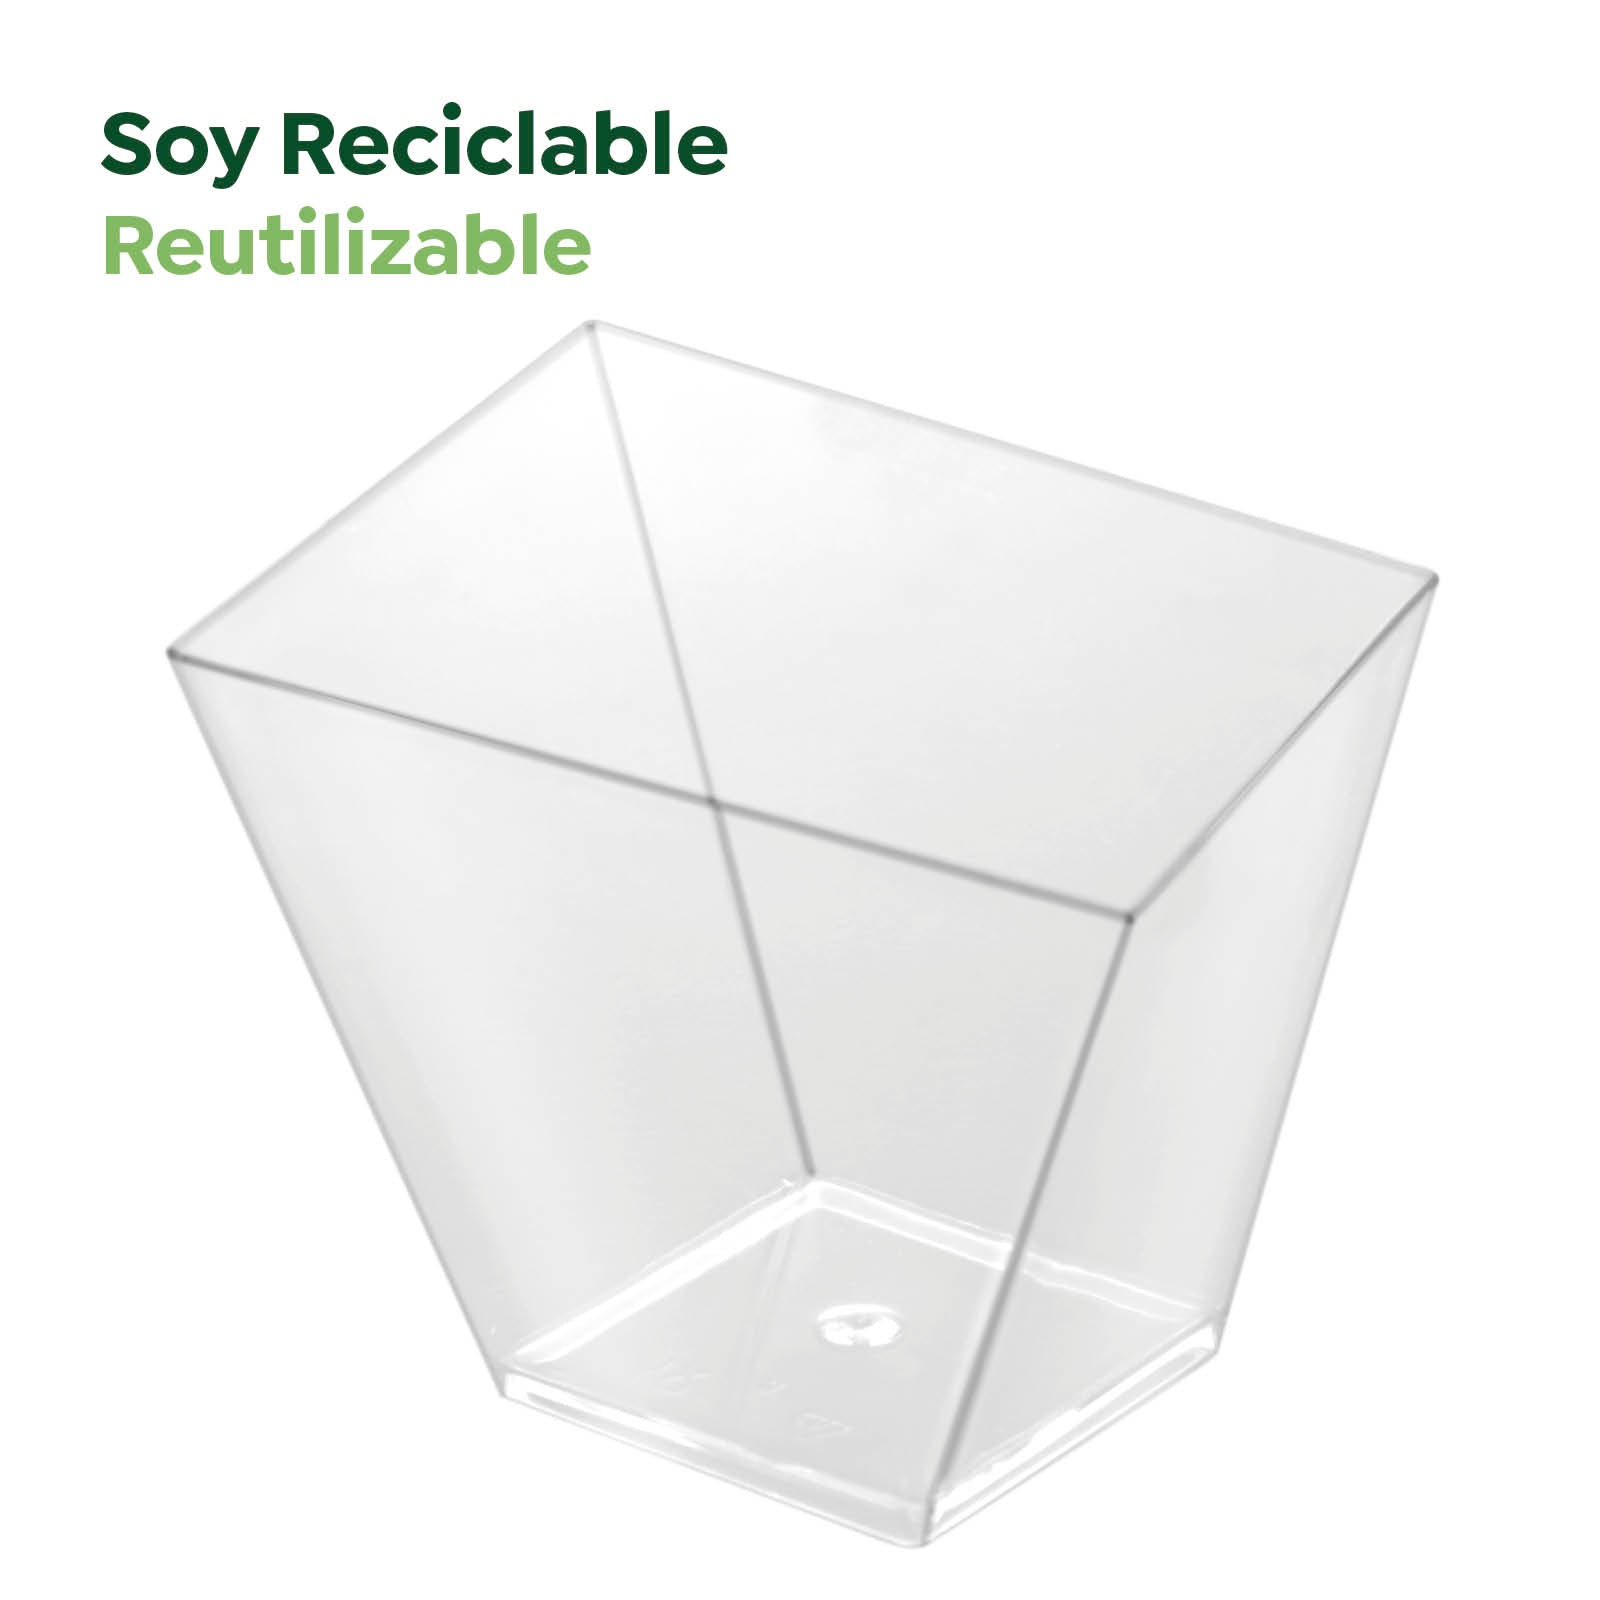 Bol Plástico Reciclable Cuadrado Grande Asimétrico Finger Food 180 cc Transparente